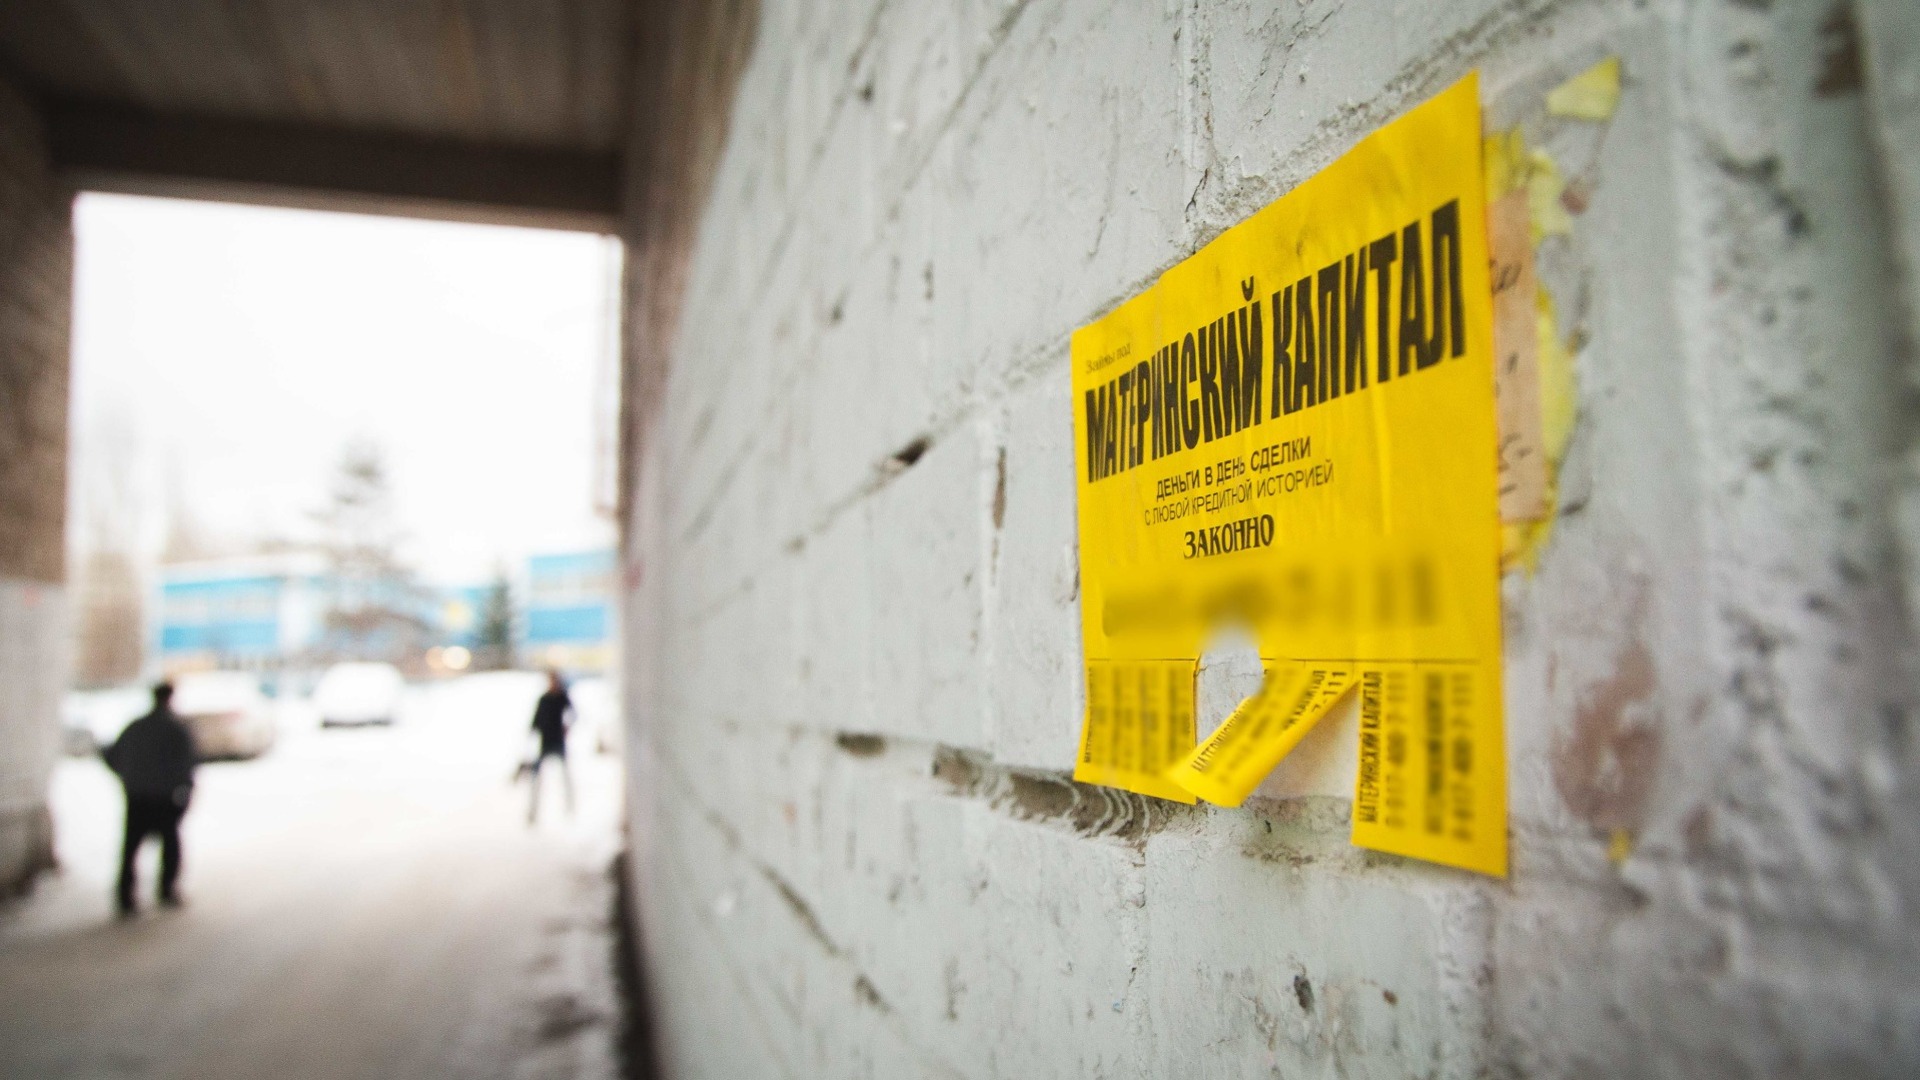 Девочка-подросток распространяла экстремистские листовки по территории Березовского